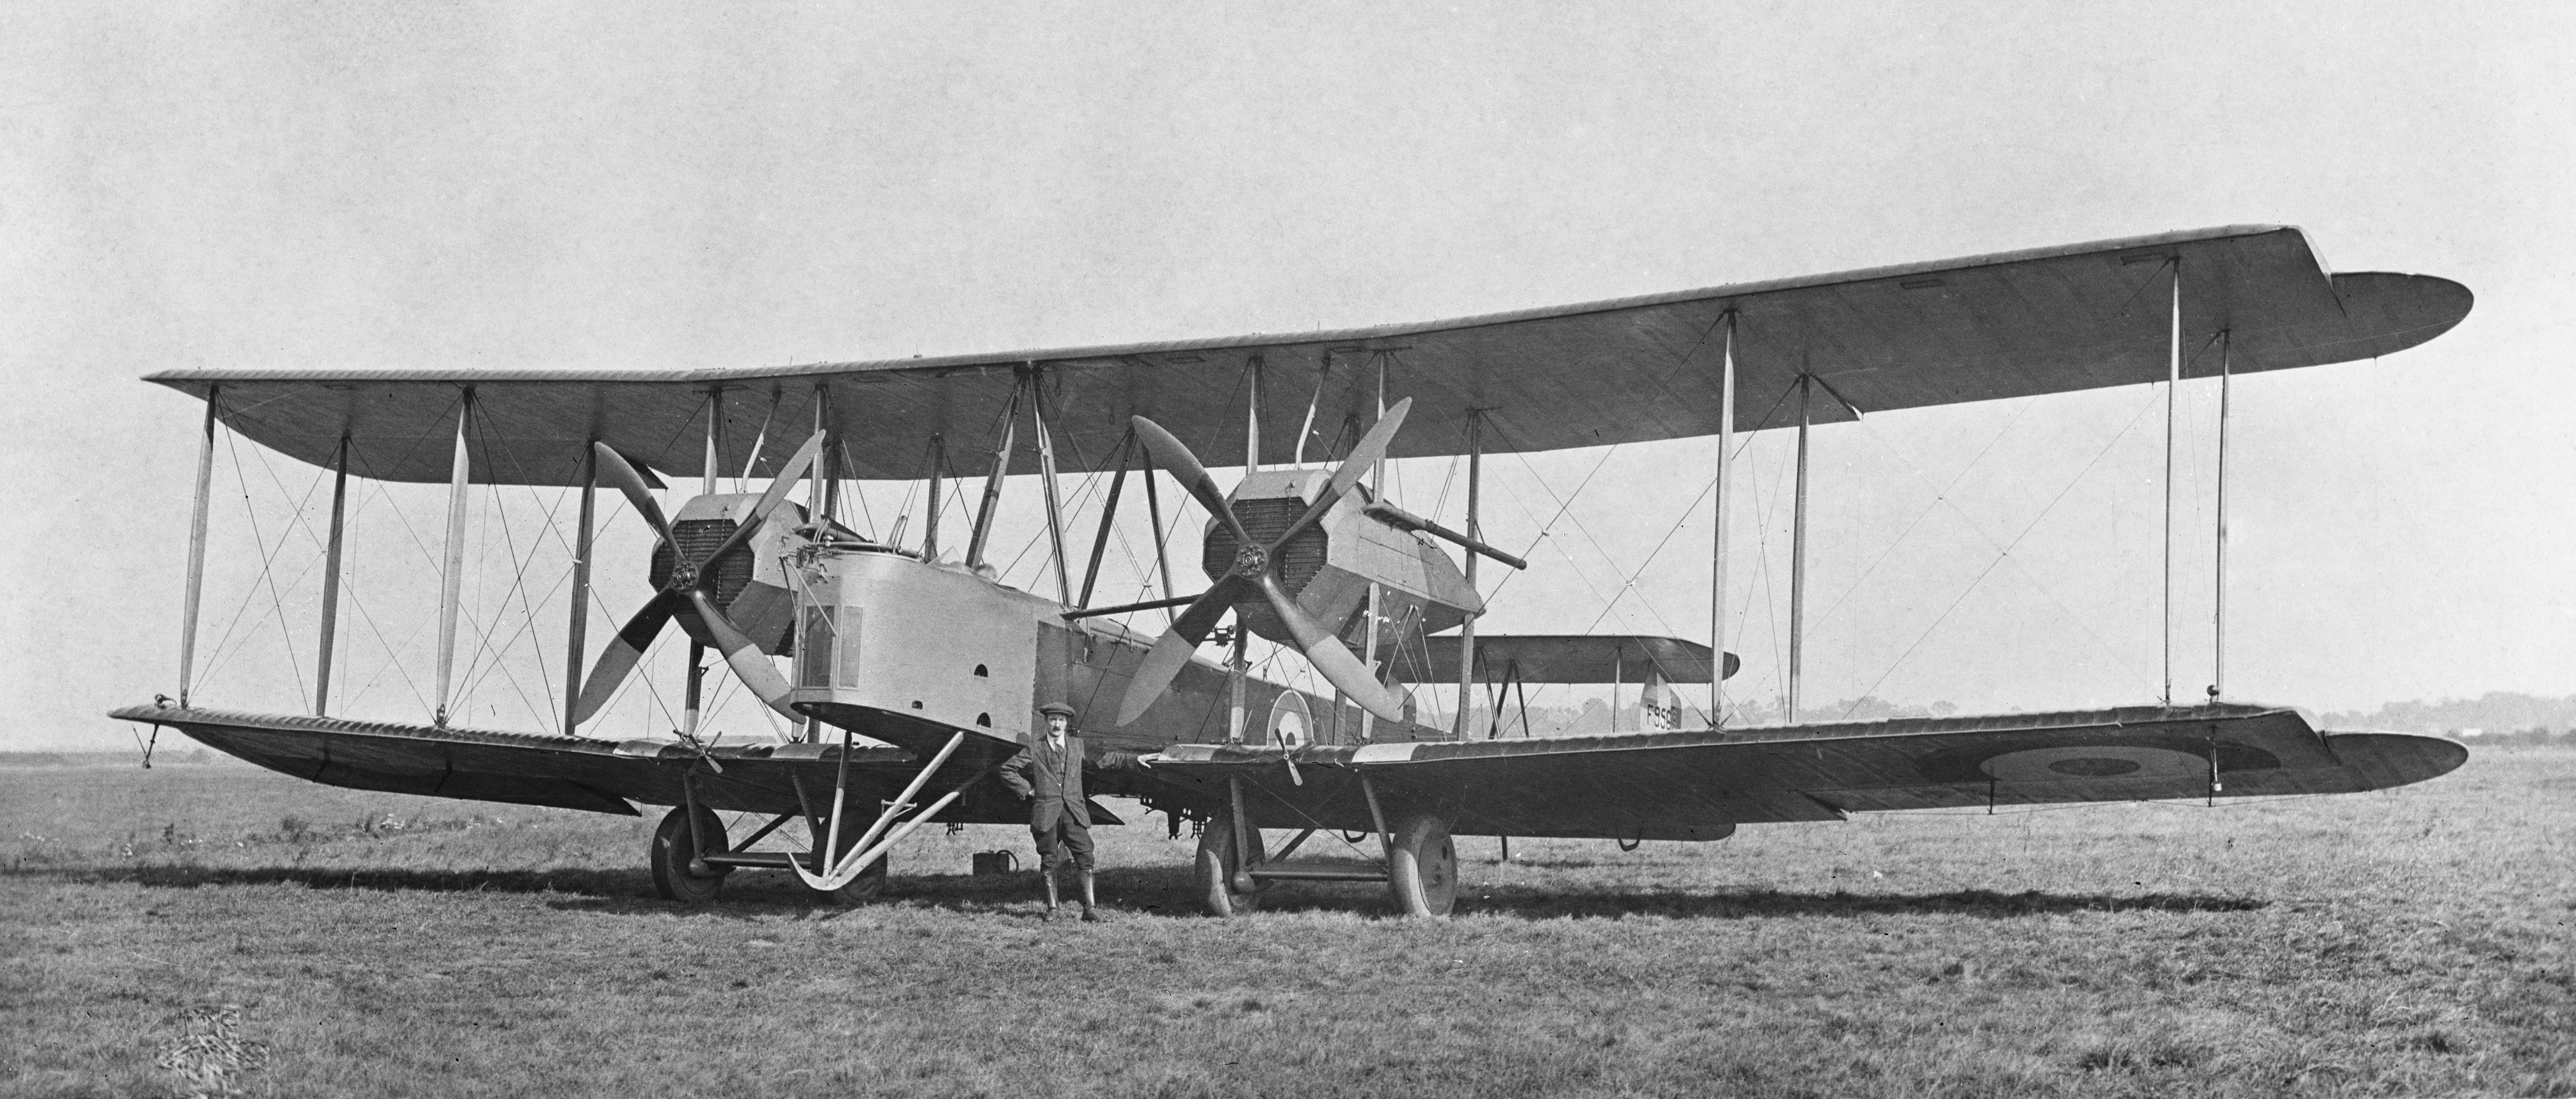 На 14 юни 1919 година английските авиатори Джон Уилям Елкок и Артър Браун излитат от канадското градче Сент Джон, Ню Фаундленд със самолет на компанията "Викерс". Те осъществяват първия полет над Атлантическия океан без междинно кацане. След един ден във въздуха те се приземяват в Ирландия на място, наречено Клифден